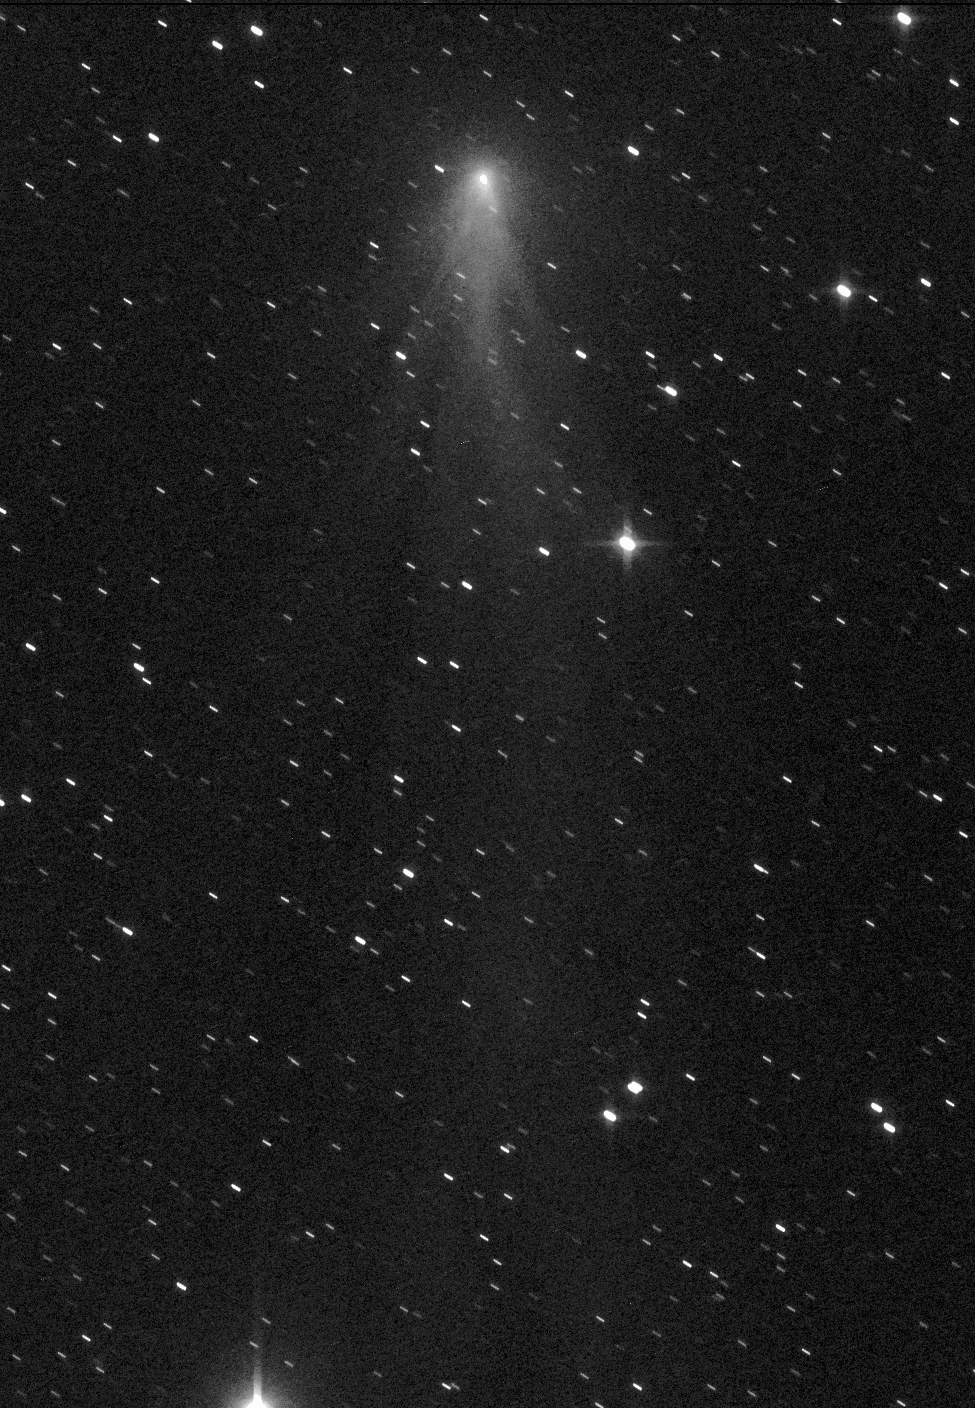 Gerald Rhemann et Michael Jäger sont deux astrophotographes chevronnés chasseurs de comètes qui officient sous le ciel d’Autriche. Voici un de leur portrait de la comète C/2016 R2. Ils l’ont surnommée méduse. La comète danse, les cheveux au vent solaire. Photo prise le 19 janvier 2018. Autre animation à voir aussi <a href="http://spaceweathergallery.com/indiv_upload.php?upload_id=141884" target="_blank">ici</a>. © Gerald Rhemann, Michael Jäger via <a href="http://spaceweathergallery.com/indiv_upload.php?upload_id=142040" title="C/2016 R2 Jellyfish " target="_blank">Spaceweather</a>